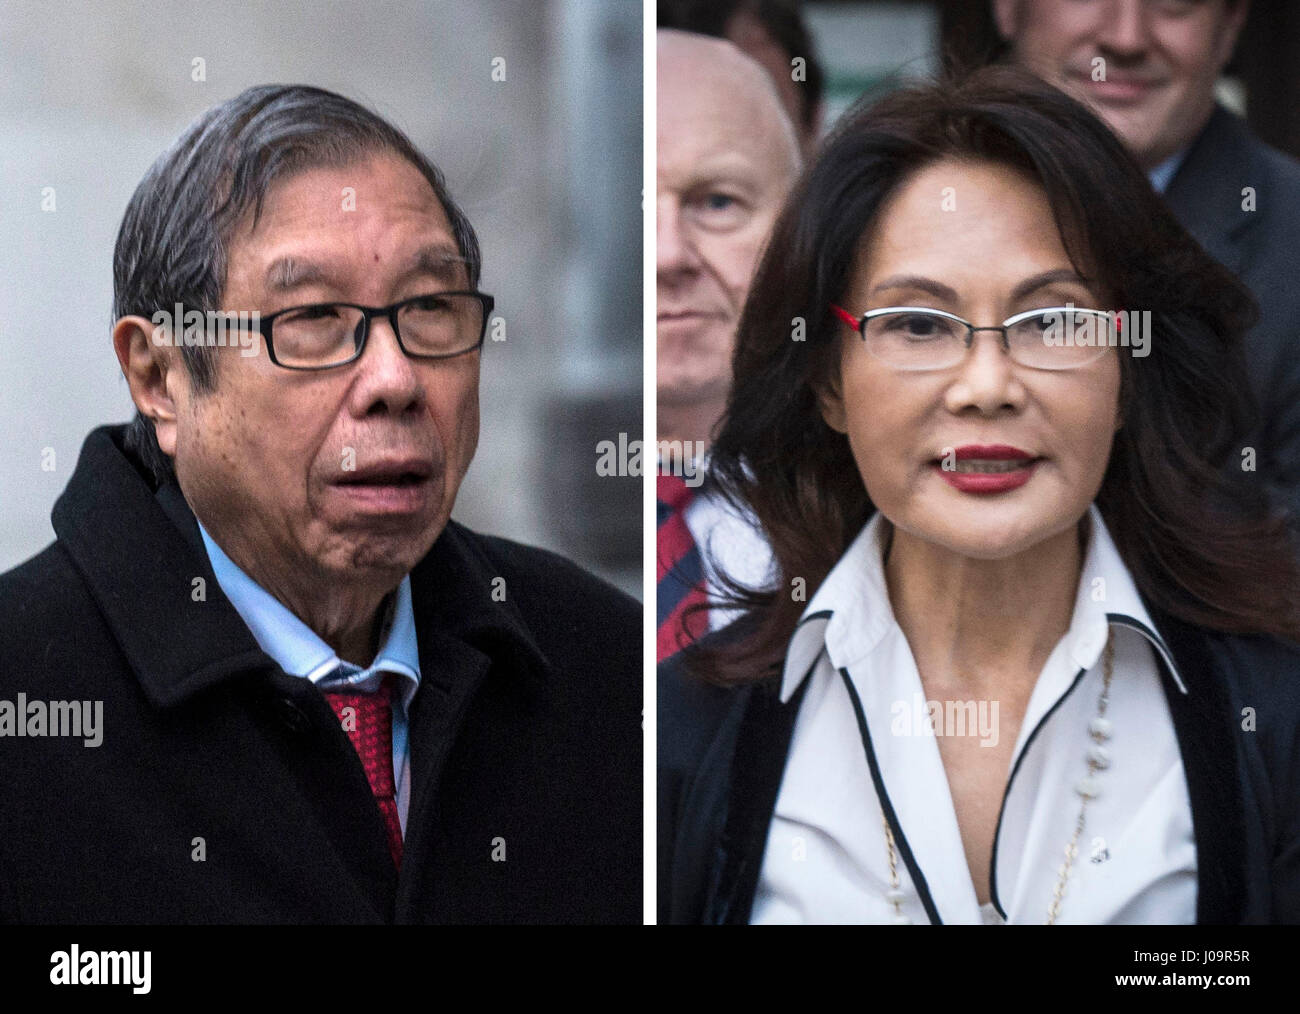 Fotos von Laura Ashley-Chef Khoo Kay Peng und seiner Ex-Frau Pauline Chai. Ein Scheidungsrichter, der der Ex-Frau von Dr. Khoo £64 Million zuerkannt hatte, schlug einen Schlag für die Eltern, die sich um Kinder kümmern, sagt ein Anwalt. Stockfoto